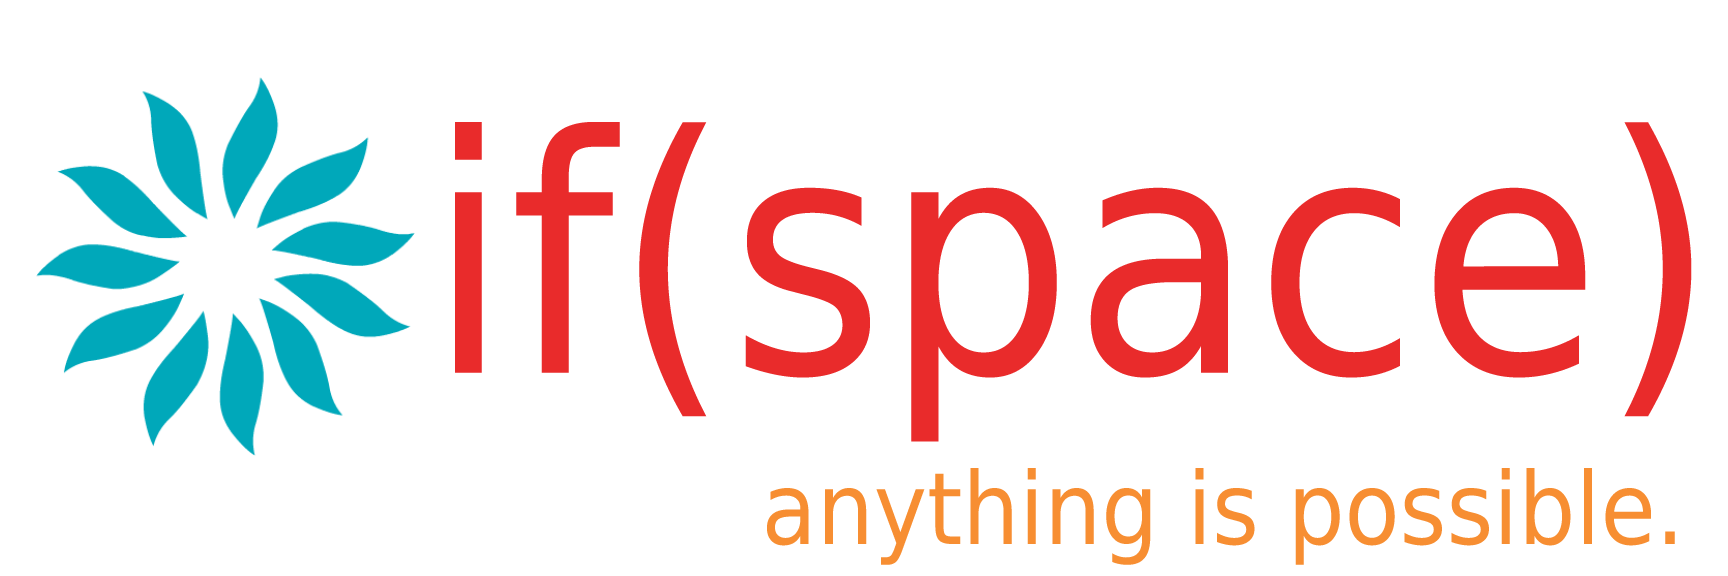 IfSpace